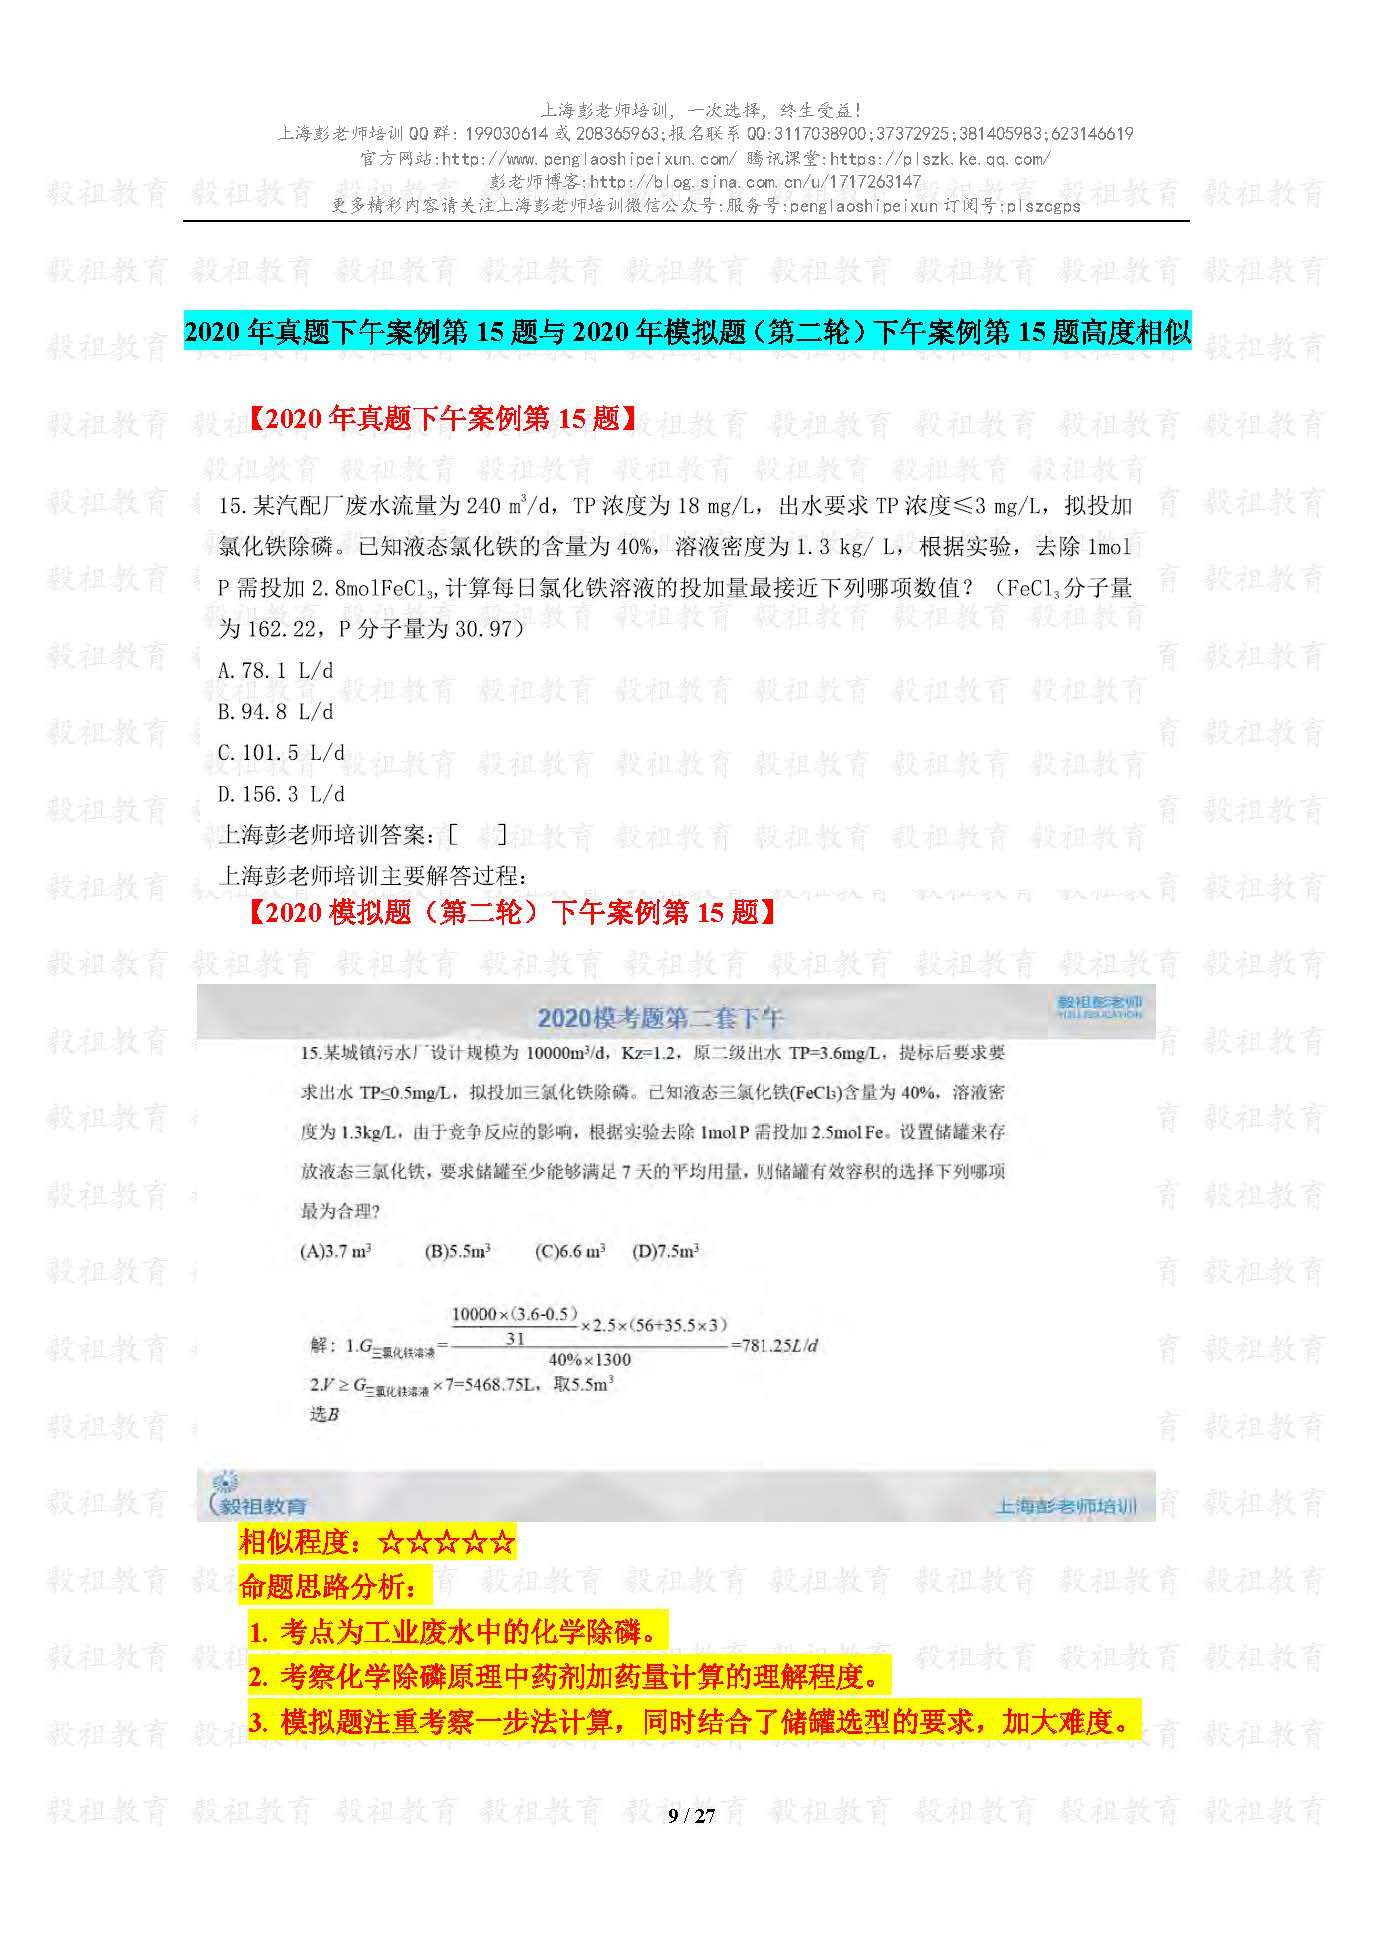 2020注册给排水考试真题与模考题相似度分析-上海彭老师培训_页面_09.jpg.jpg